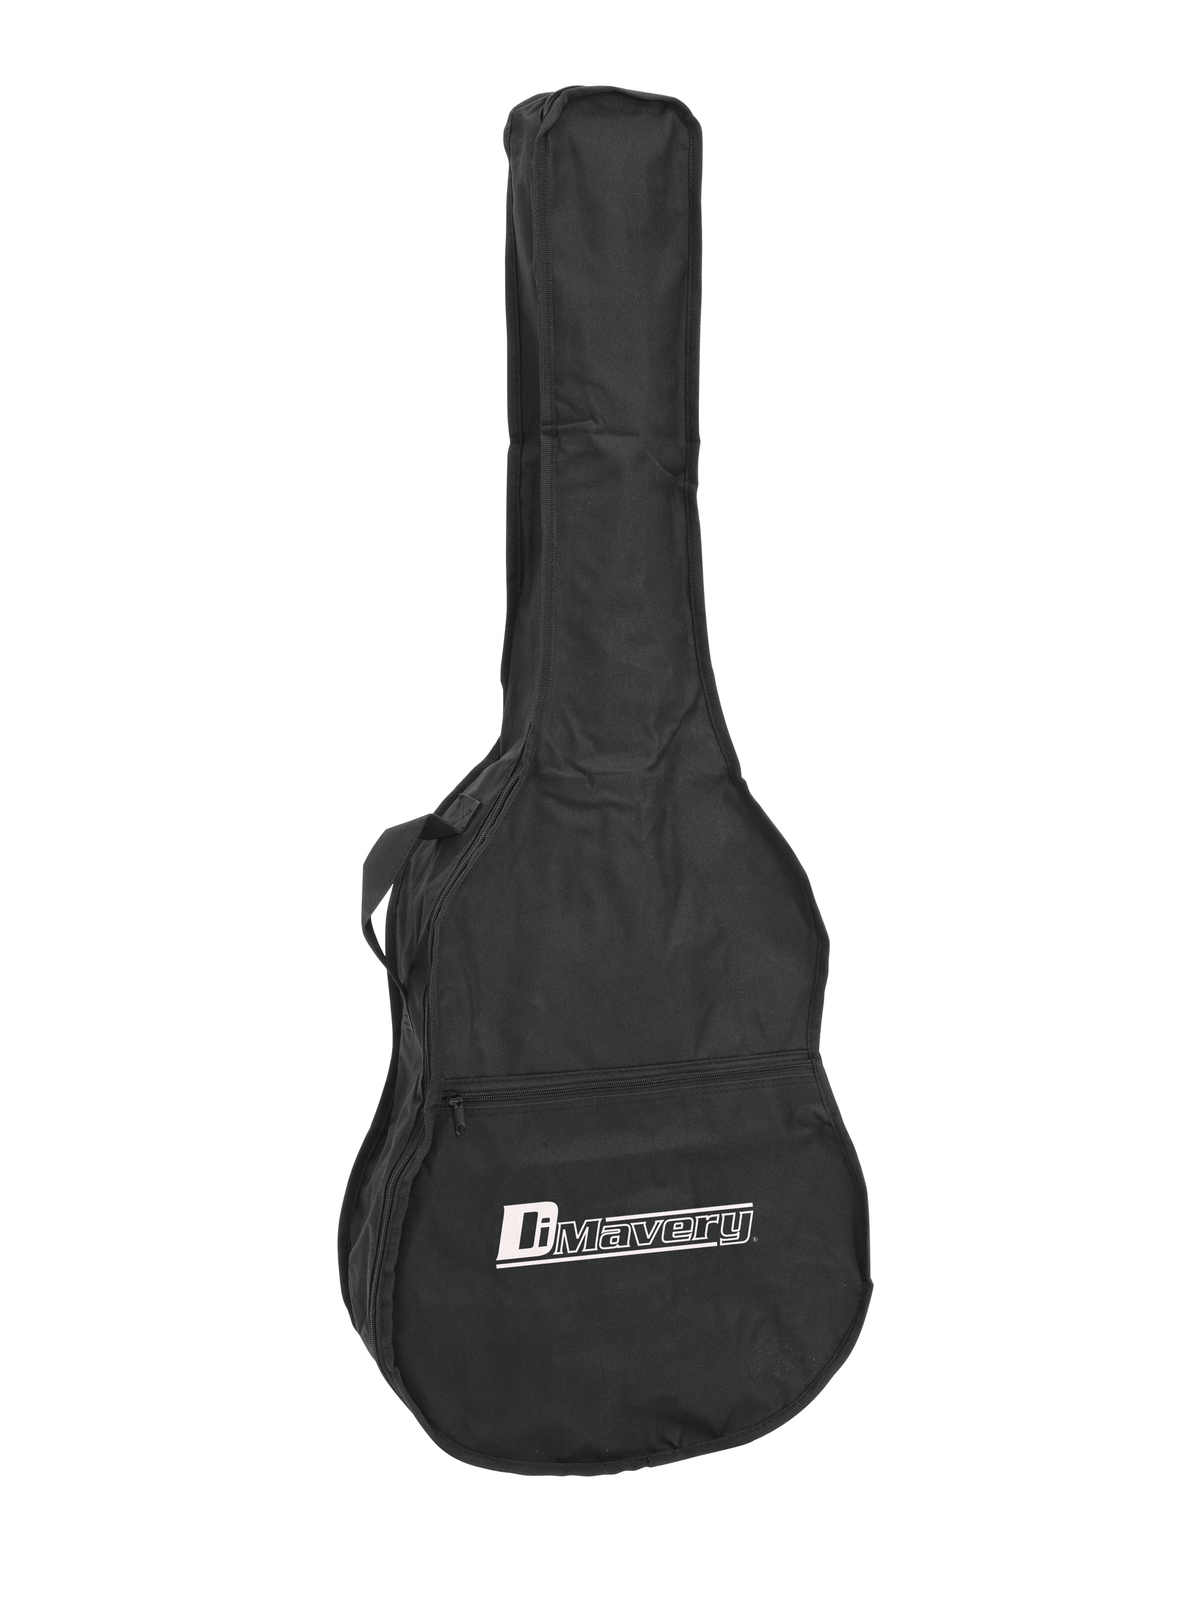 Dimavery nylonové pouzdro pro klasickou kytaru